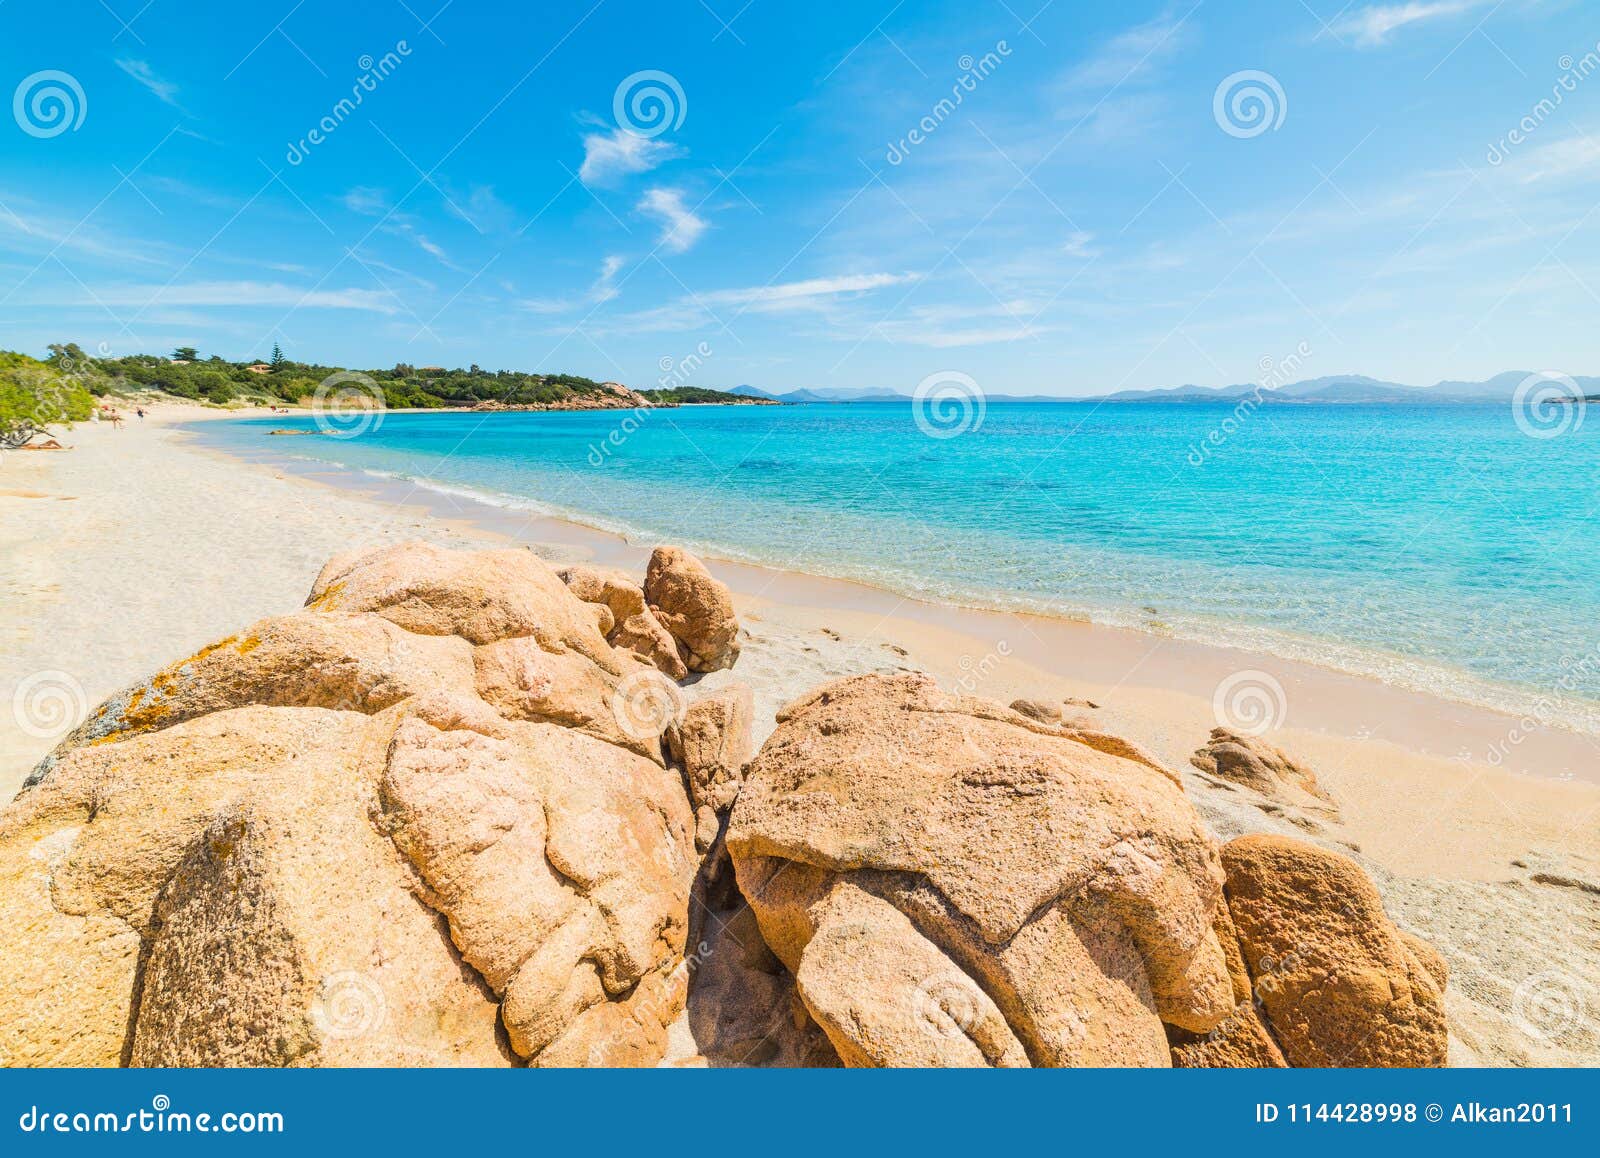 rocks and sand in liscia ruja beach